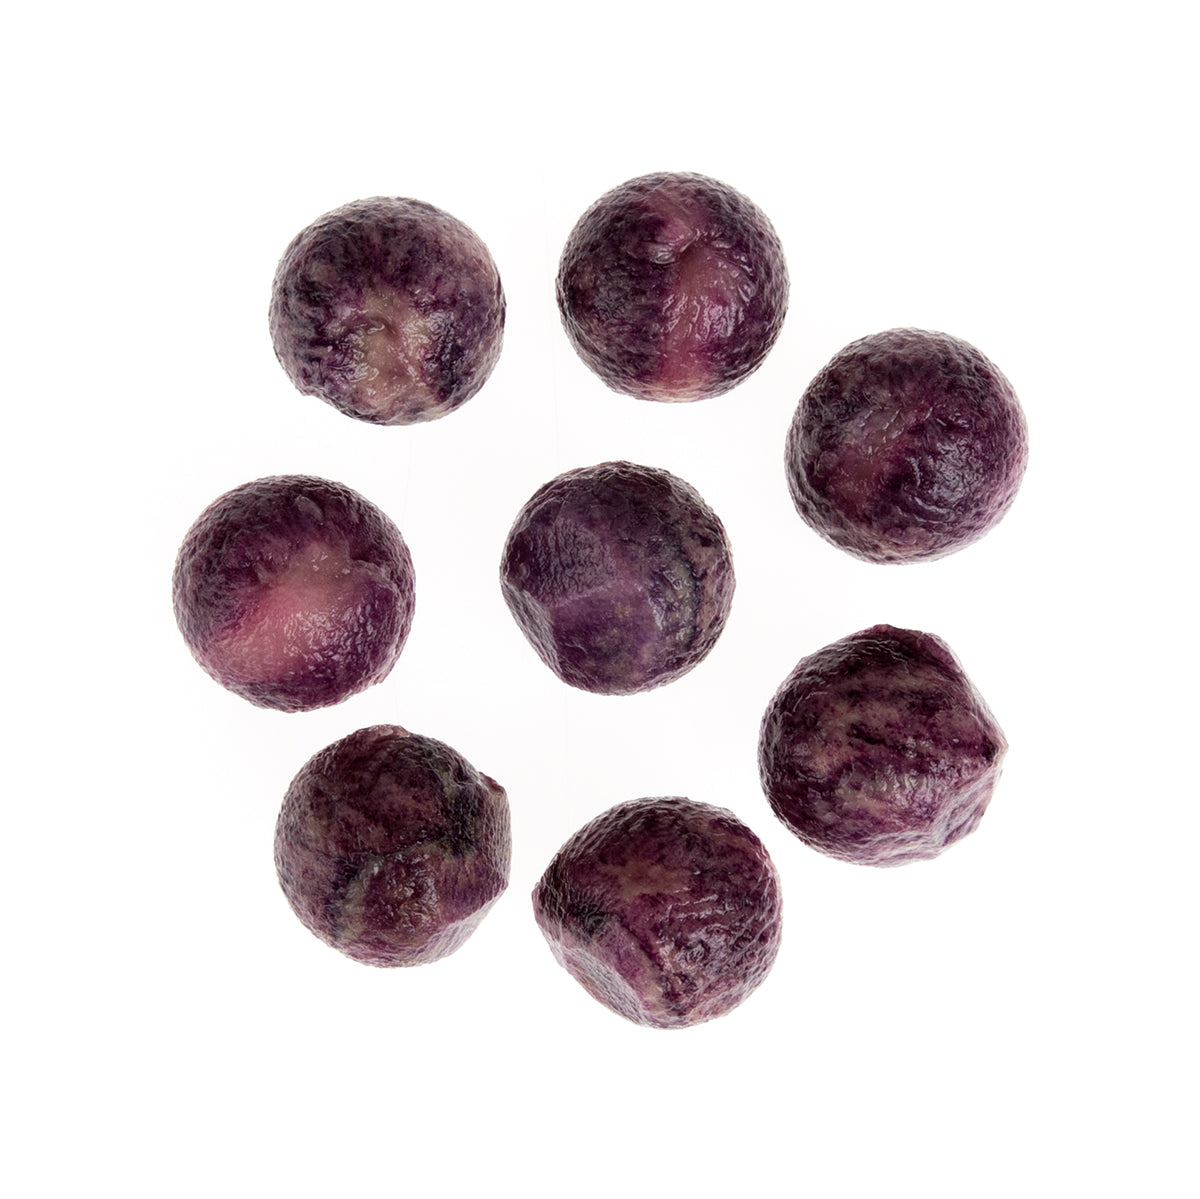 BoxNCase Parisienne Purple Potatoes 5 LB